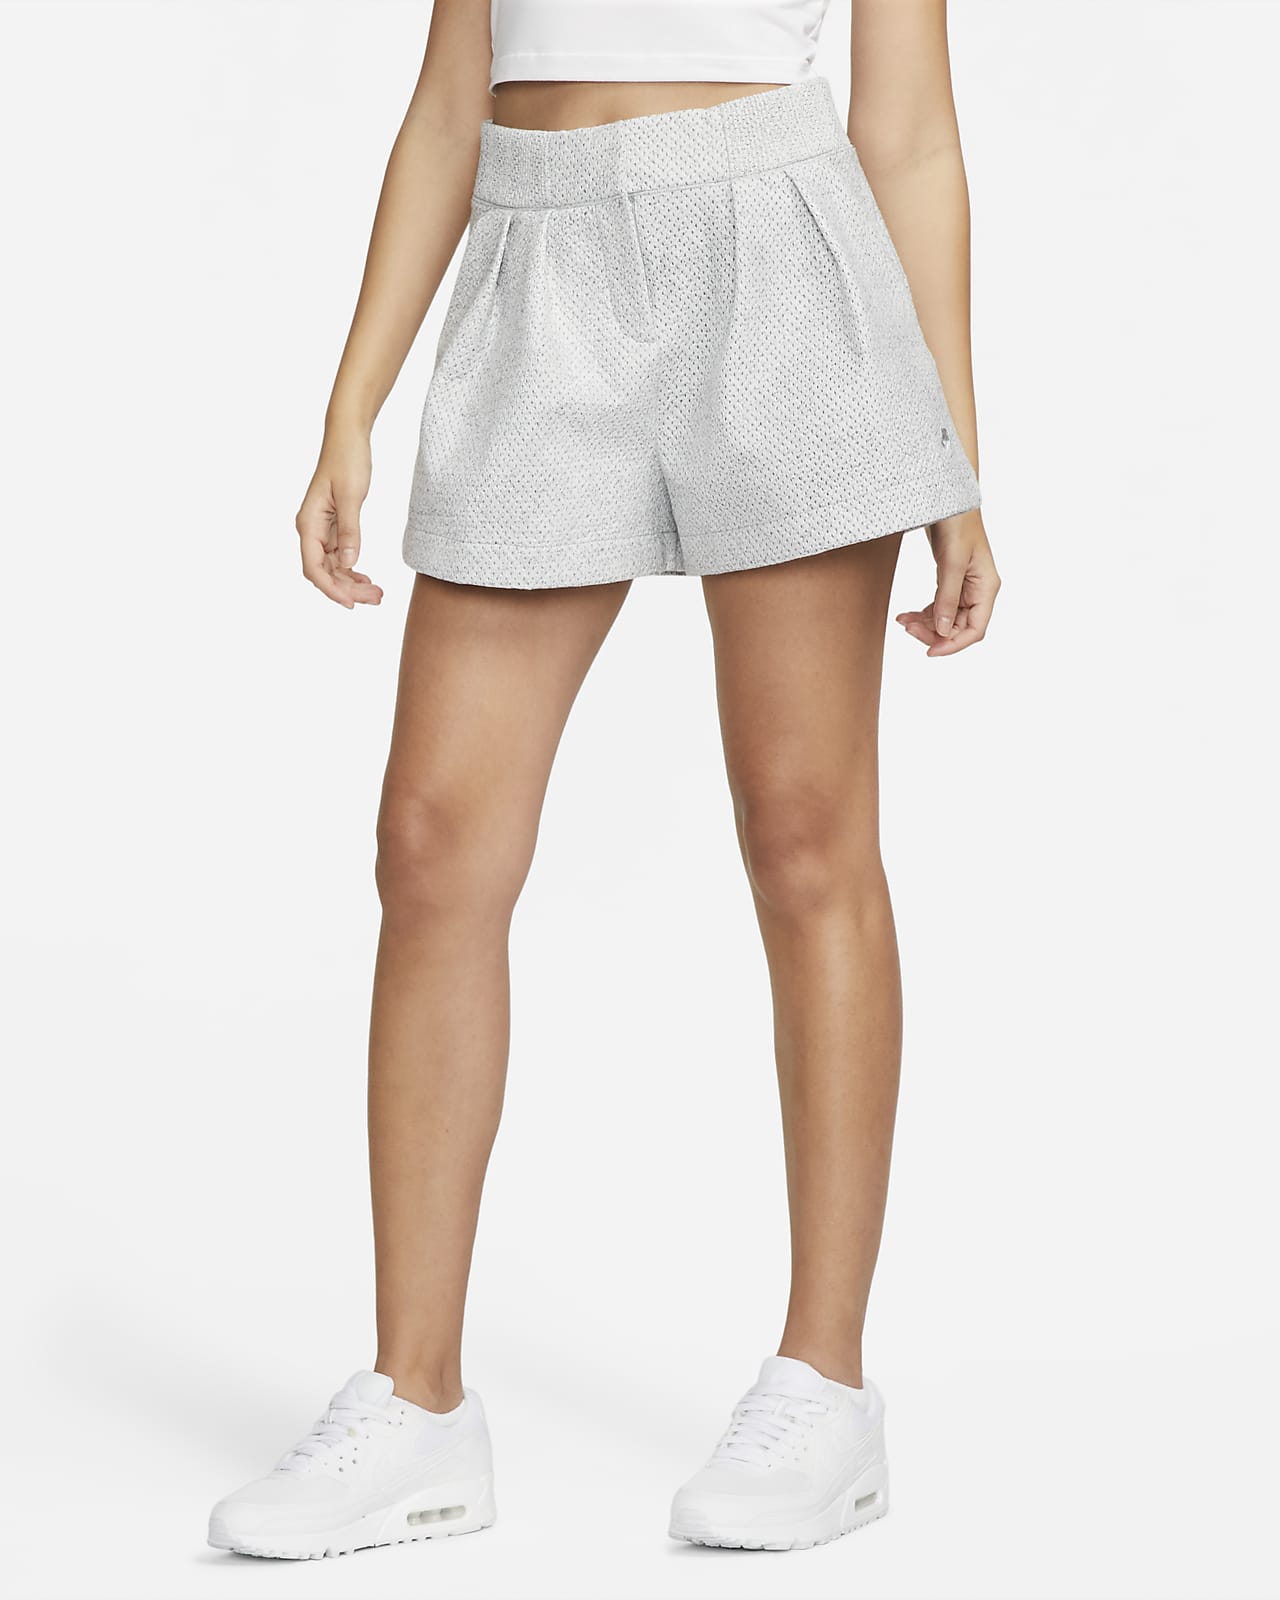 Nike Forward Shorts Damen-Shorts mit hohem Bund